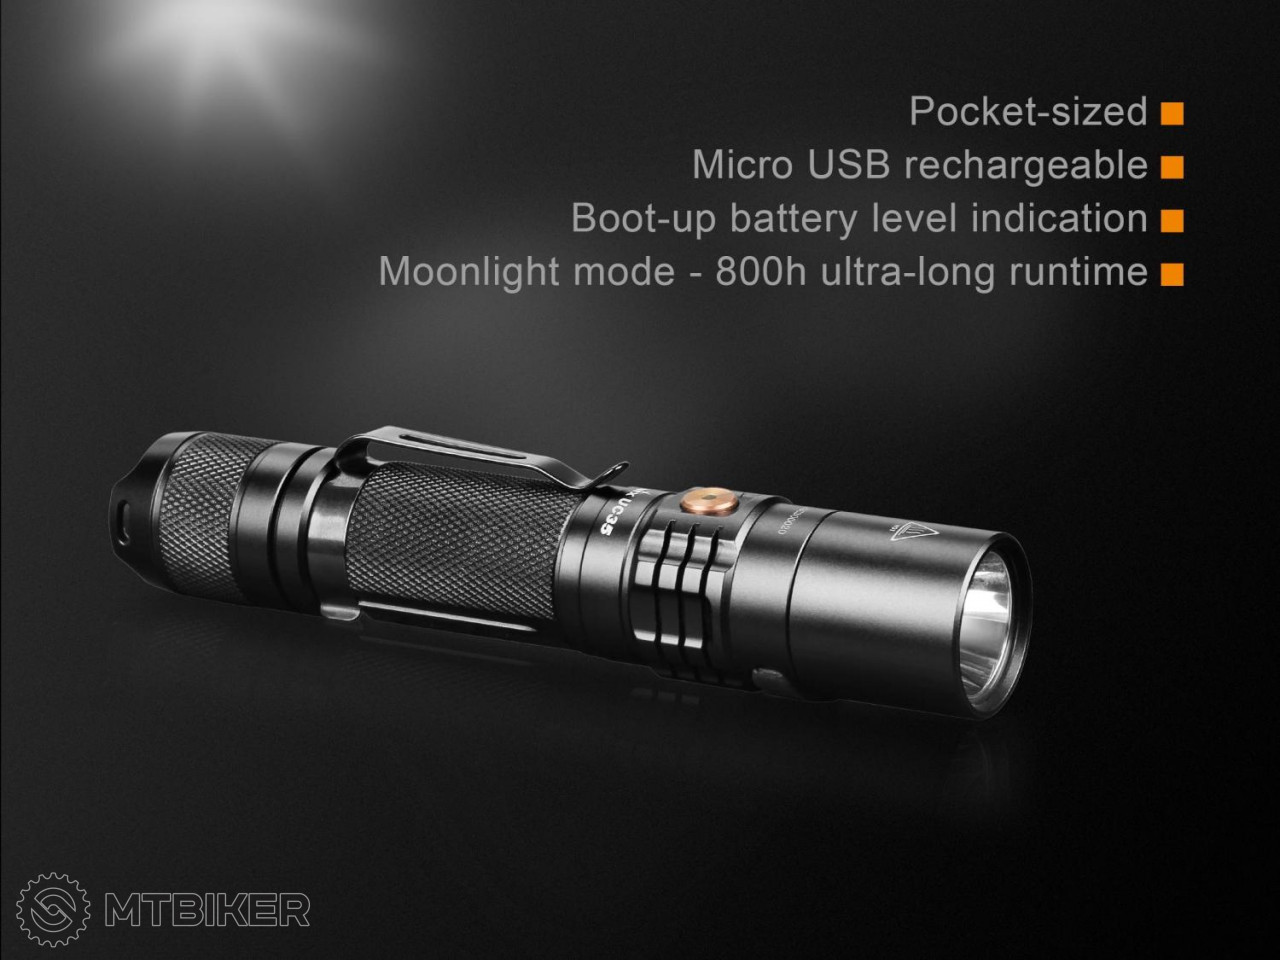 Fenix UC35 XP-L wiederaufladbare Taschenlampe